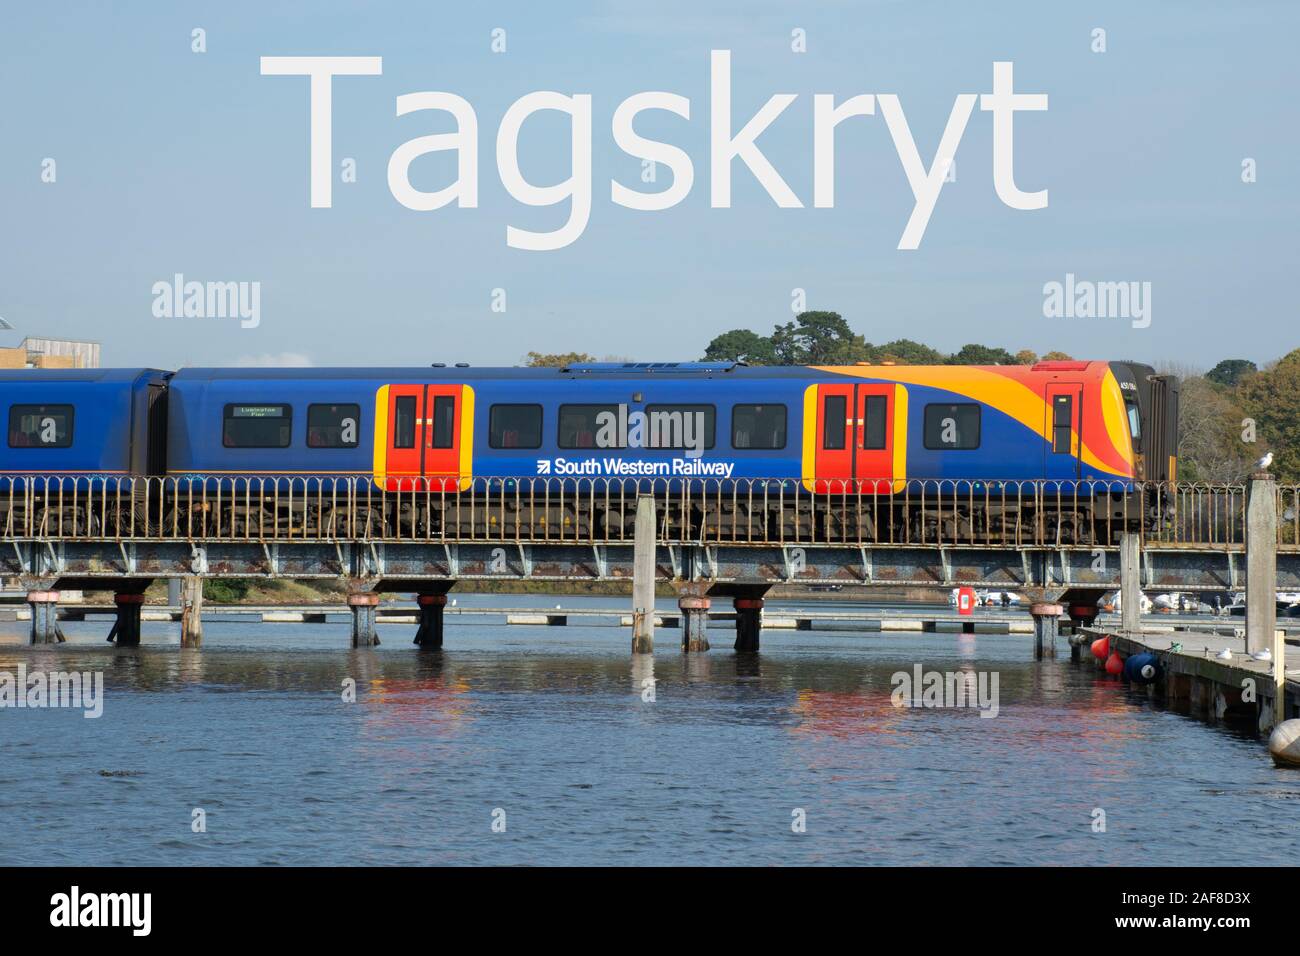 Tagskryt (Svedese per il treno la vanteria) Concetto di immagine - utilizzare il treno invece di volare per la riduzione delle emissioni di anidride carbonica travel Foto Stock